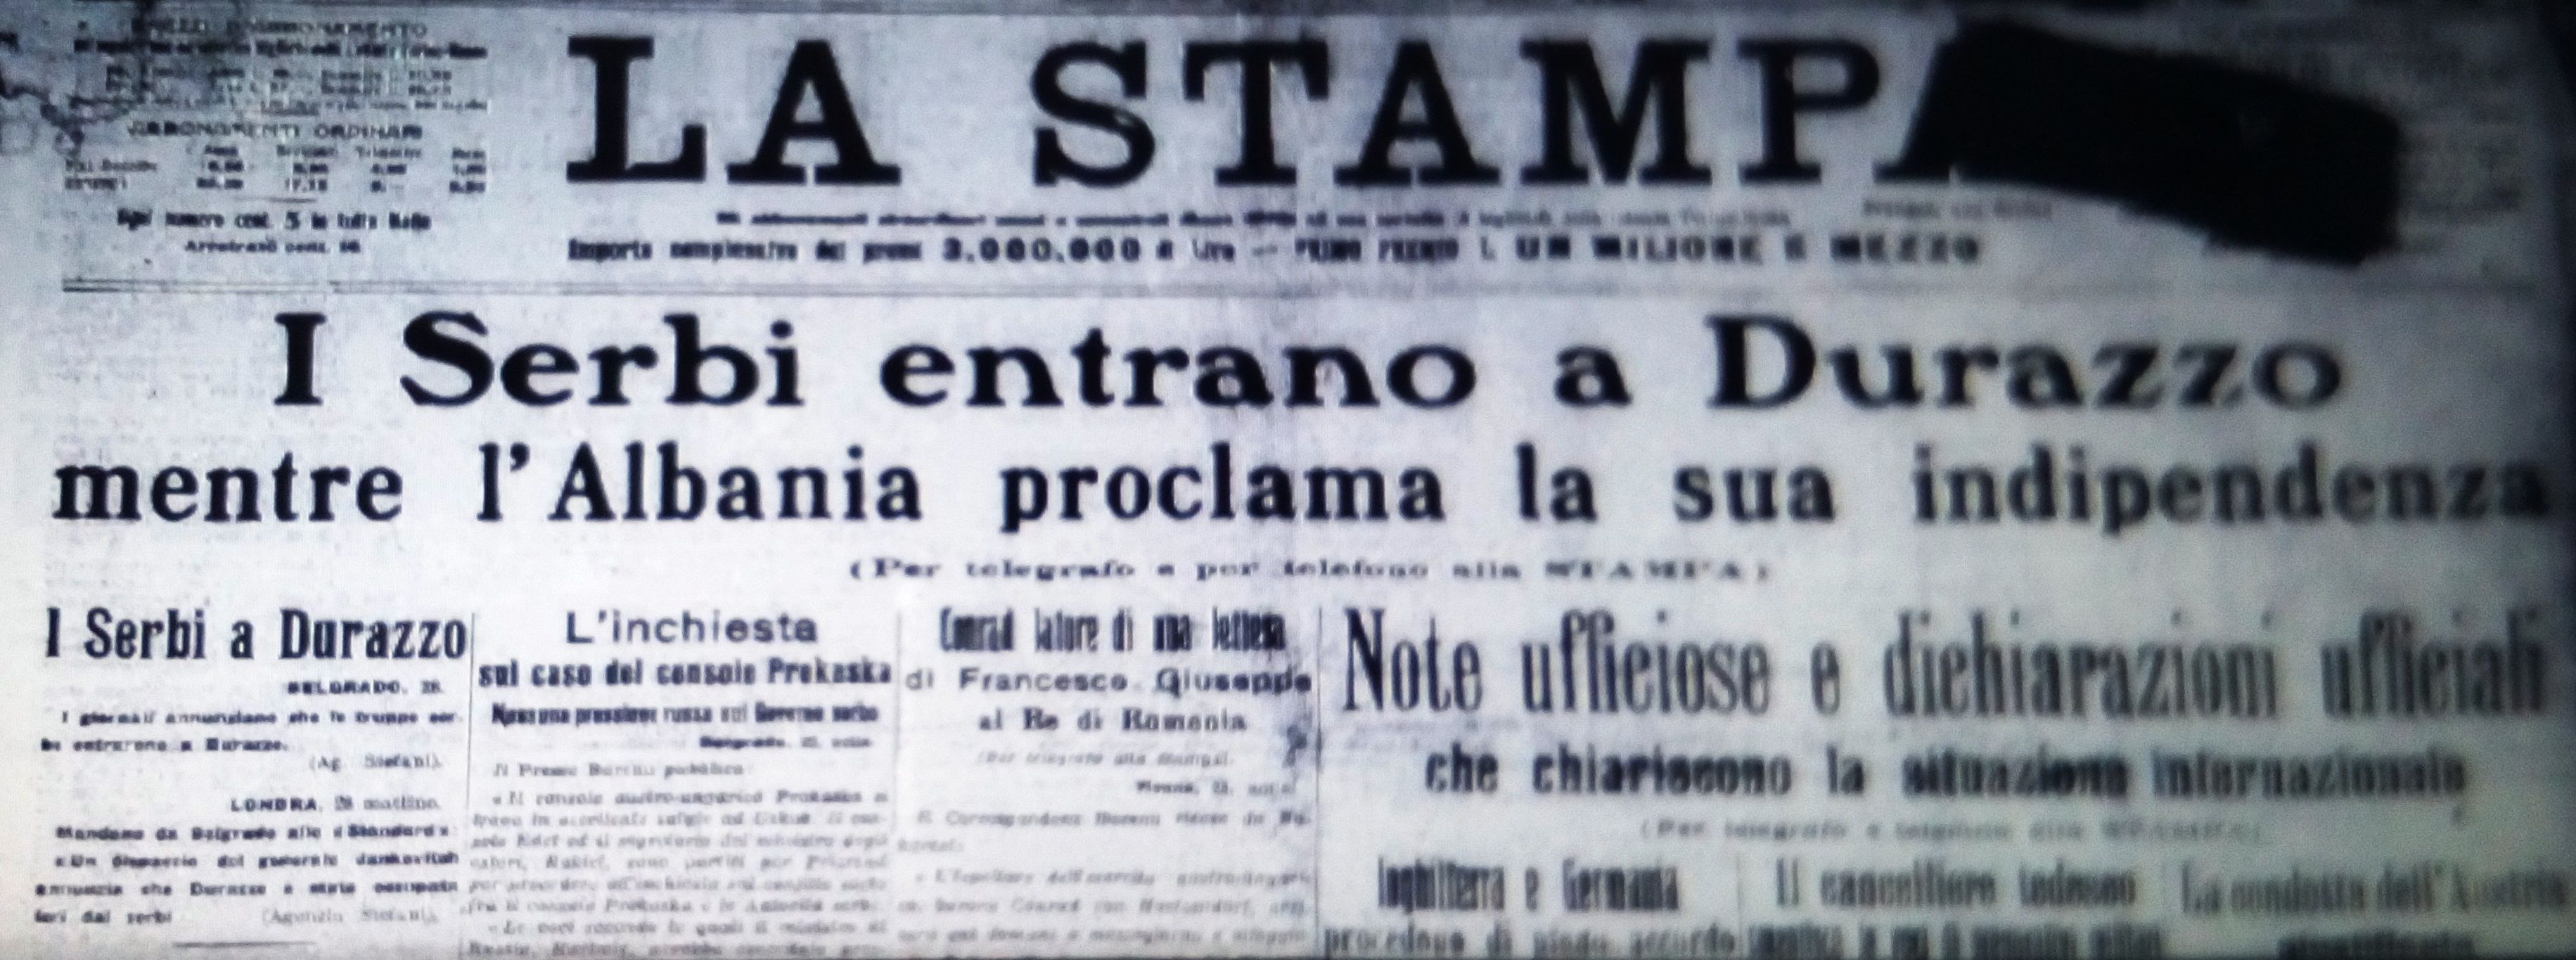 Faqja e parë e gazetës “La stampa”, që hapej me pushtimin e Durrësit nga serbët